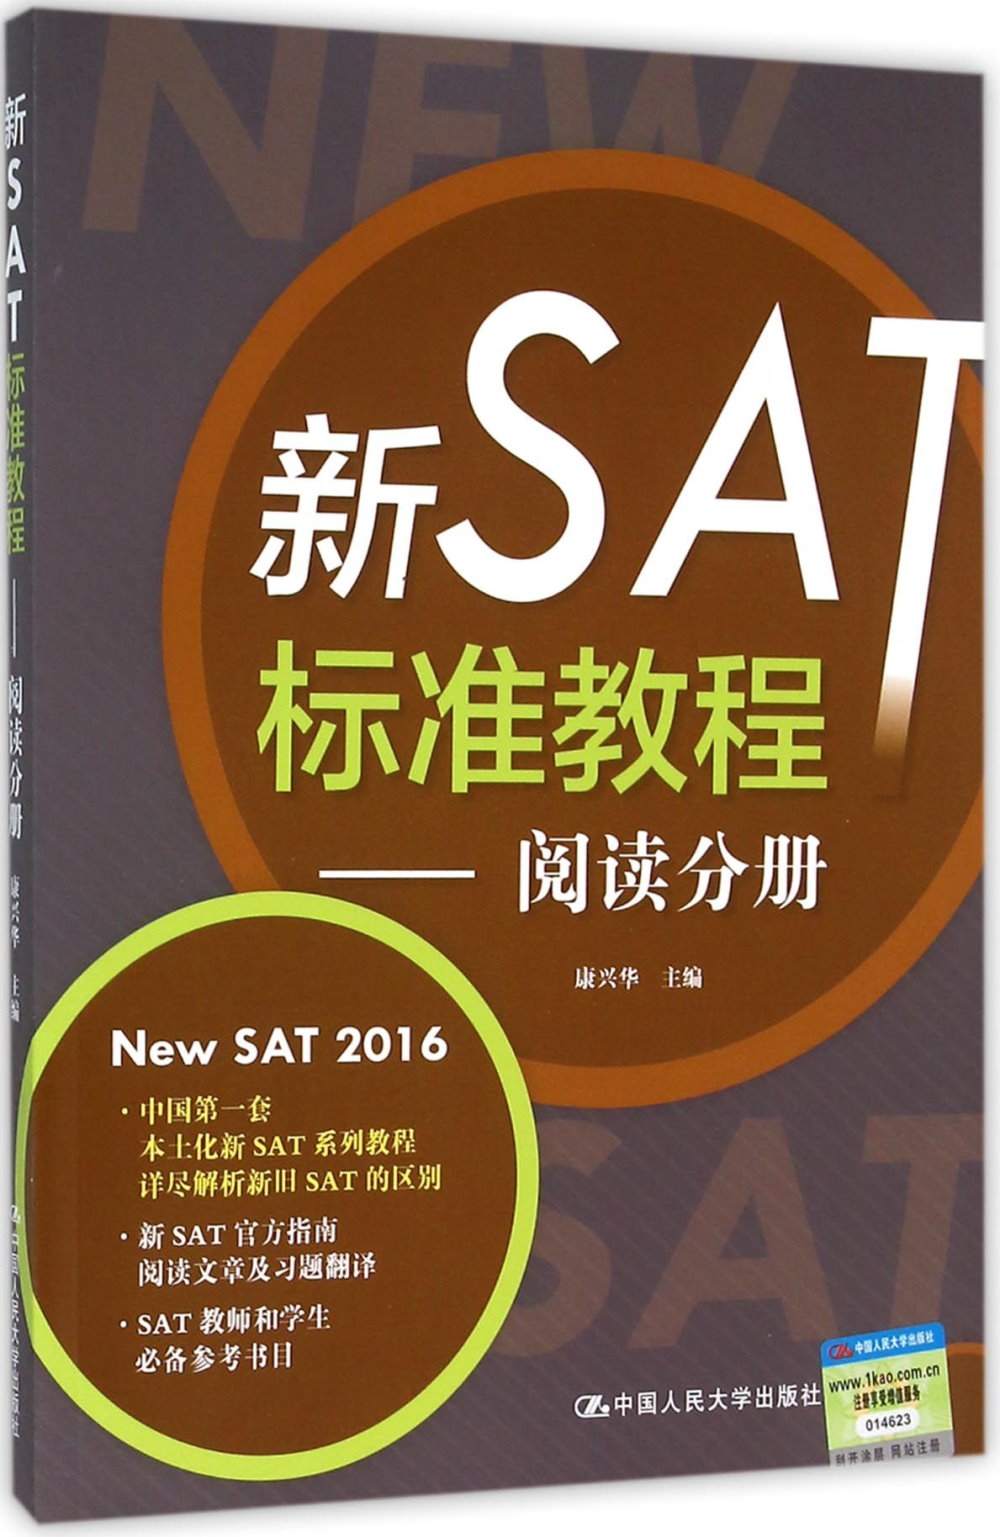 新SAT標准教程--閱讀分冊